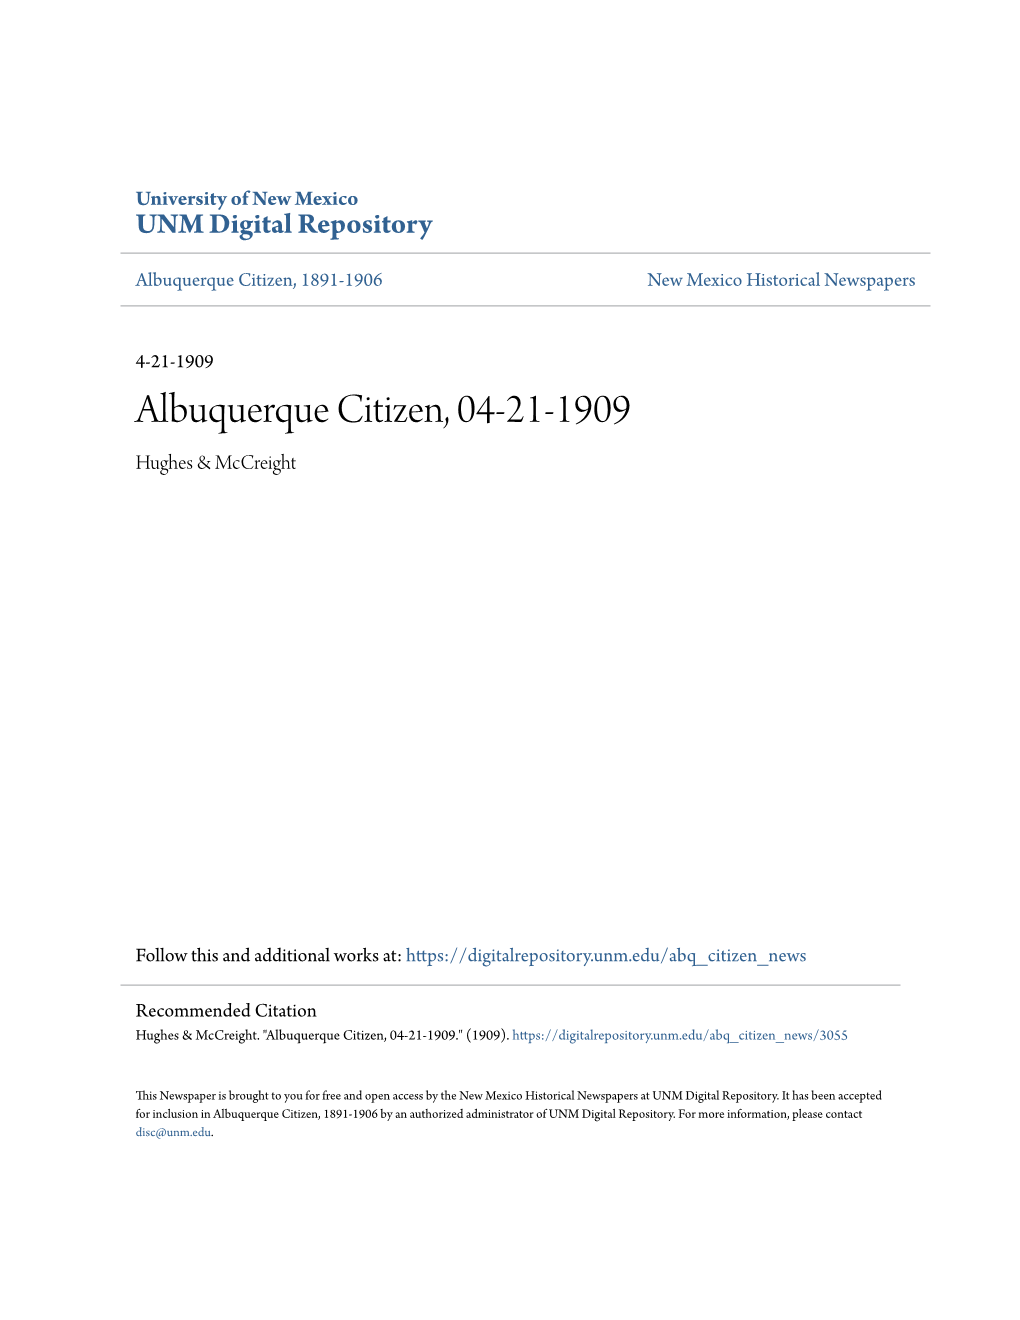 Albuquerque Citizen, 04-21-1909 Hughes & Mccreight